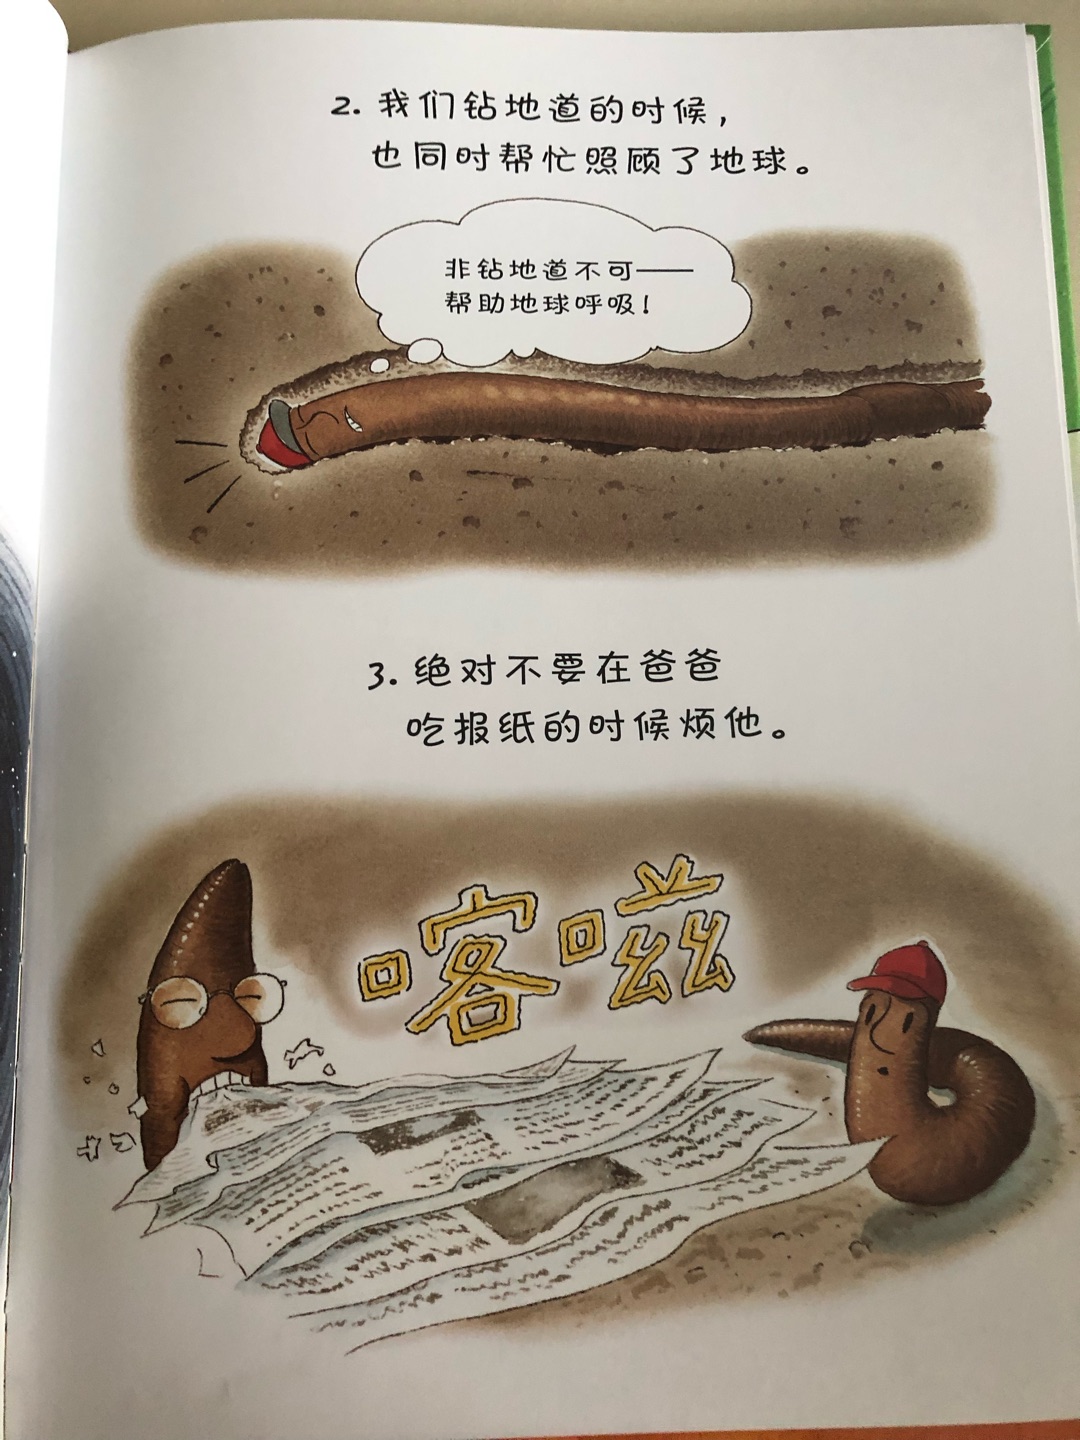 蛮可爱的一本书，用蚯蚓的口吻讲述了自己的日常生活，能让孩子了解关于蚯蚓的知识。